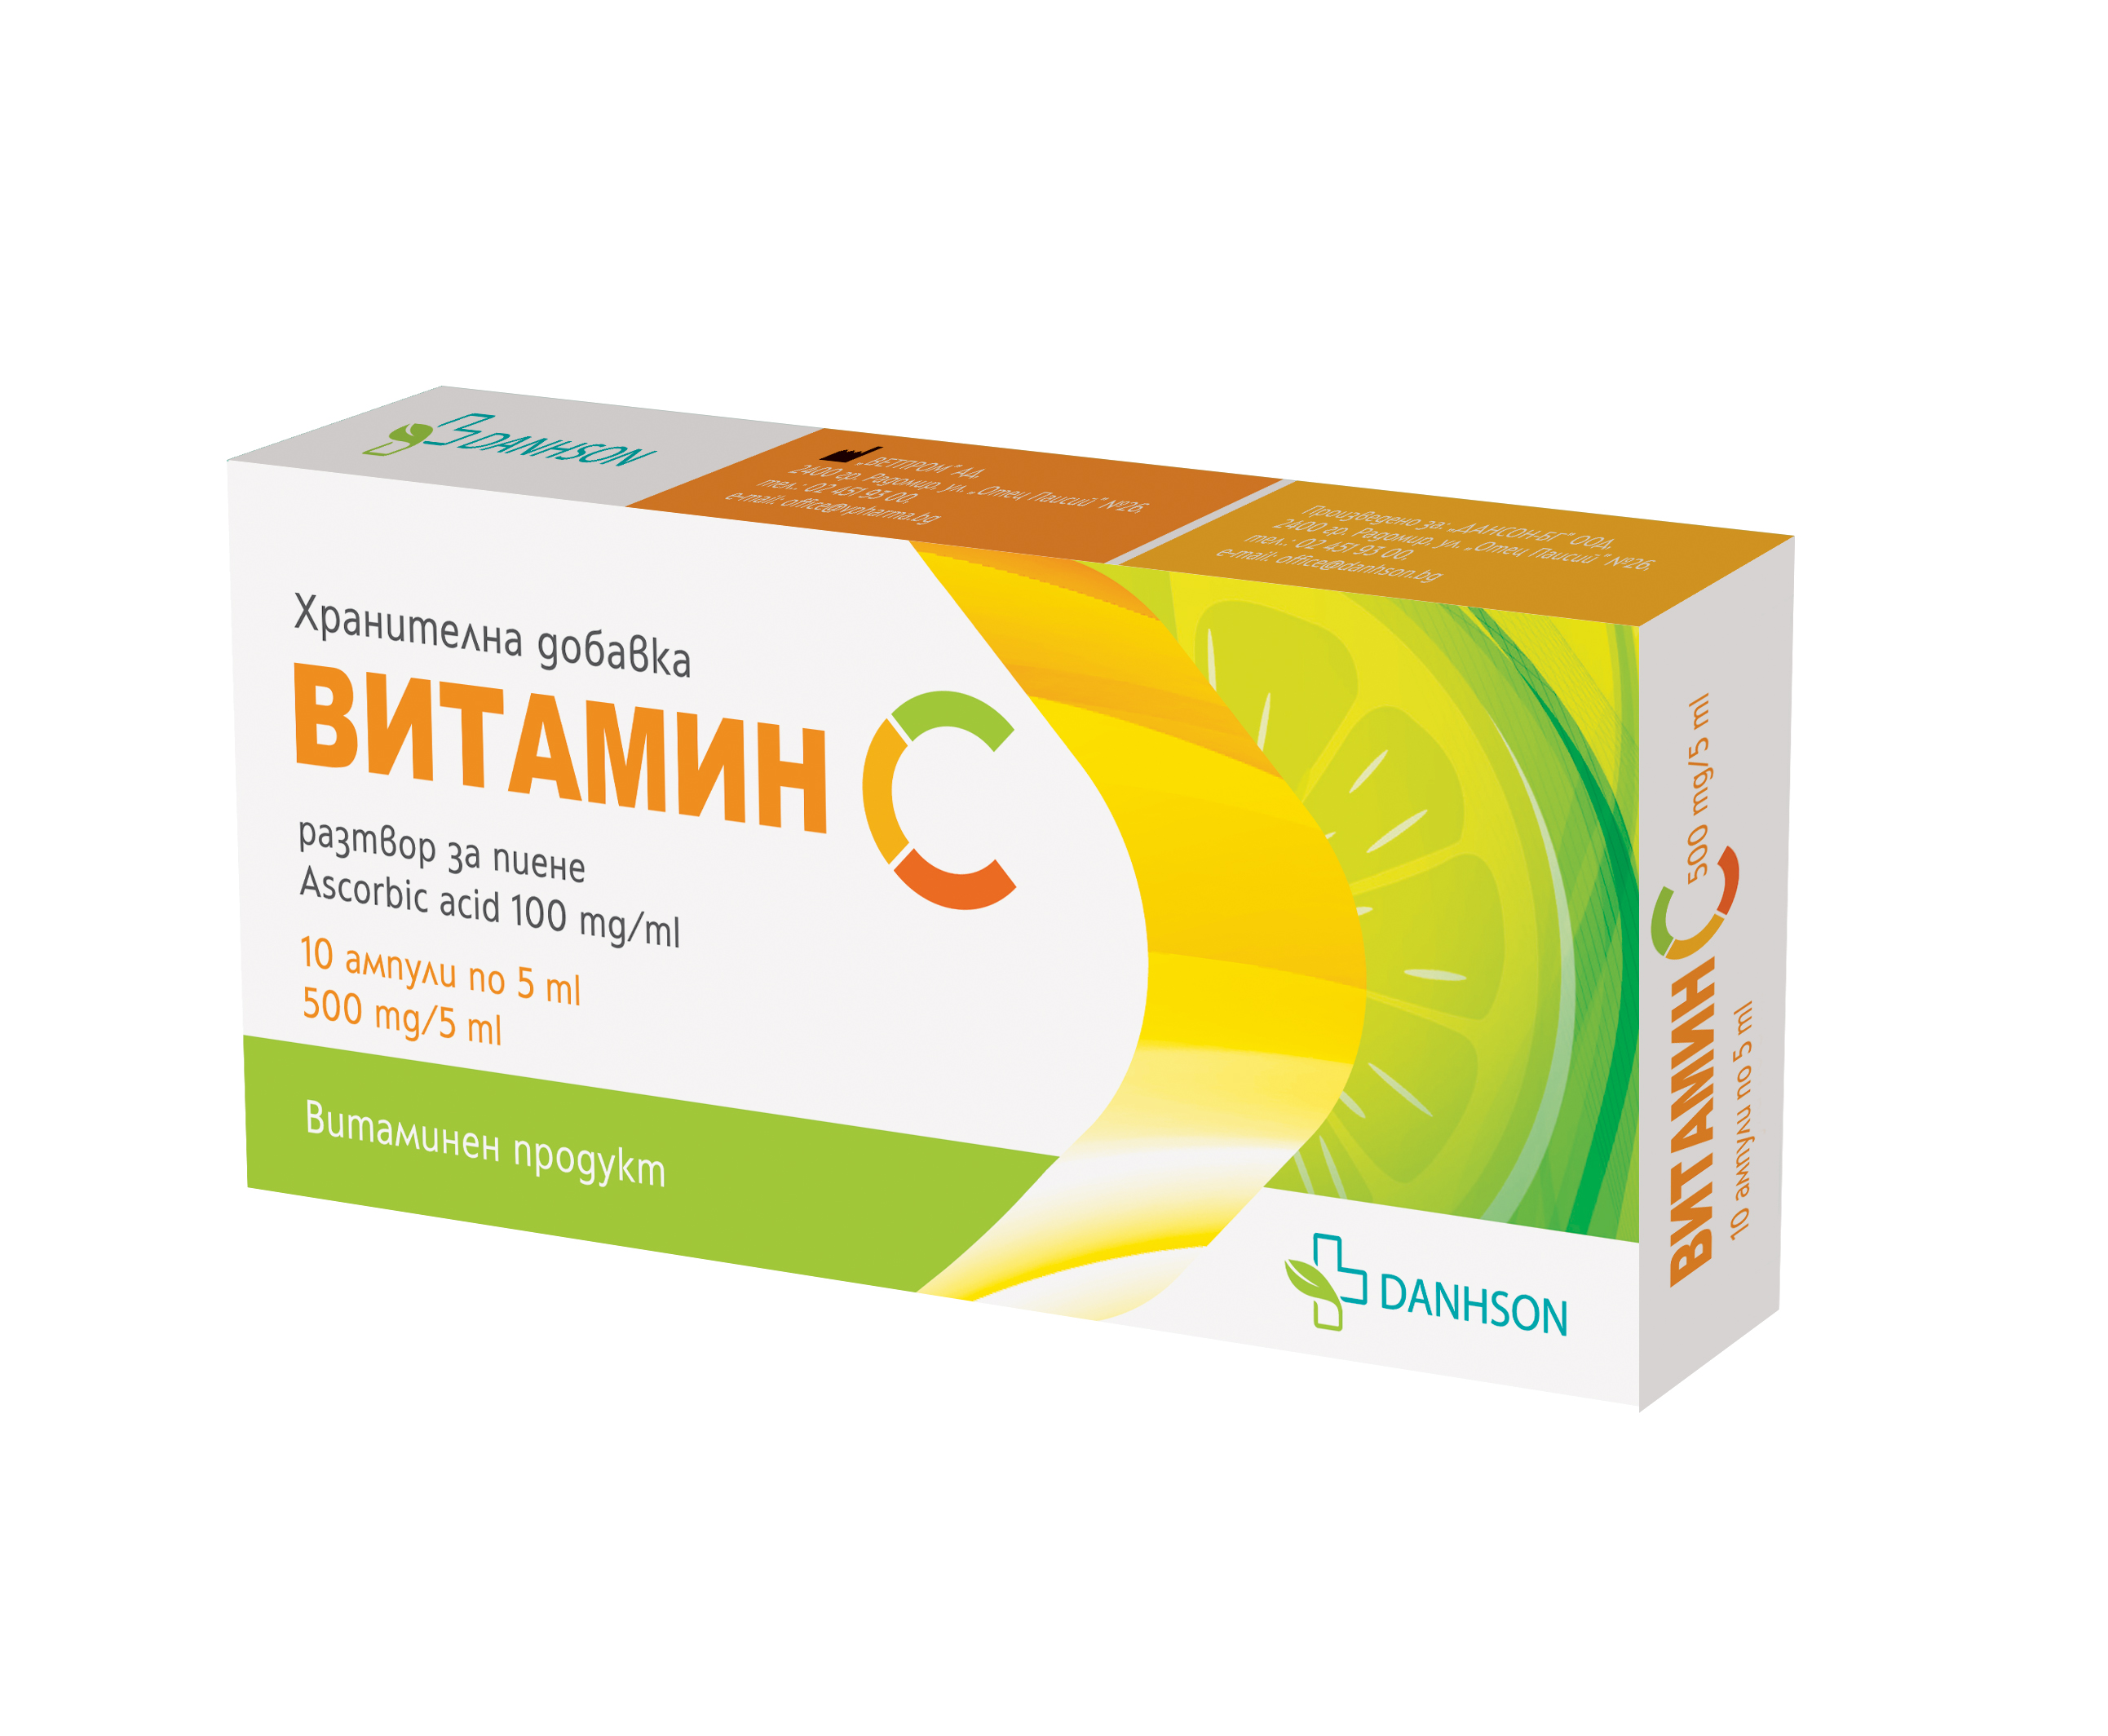 VITAMIN B12 ANKERMANN vitamin B12 1000mcg x 50 tabl